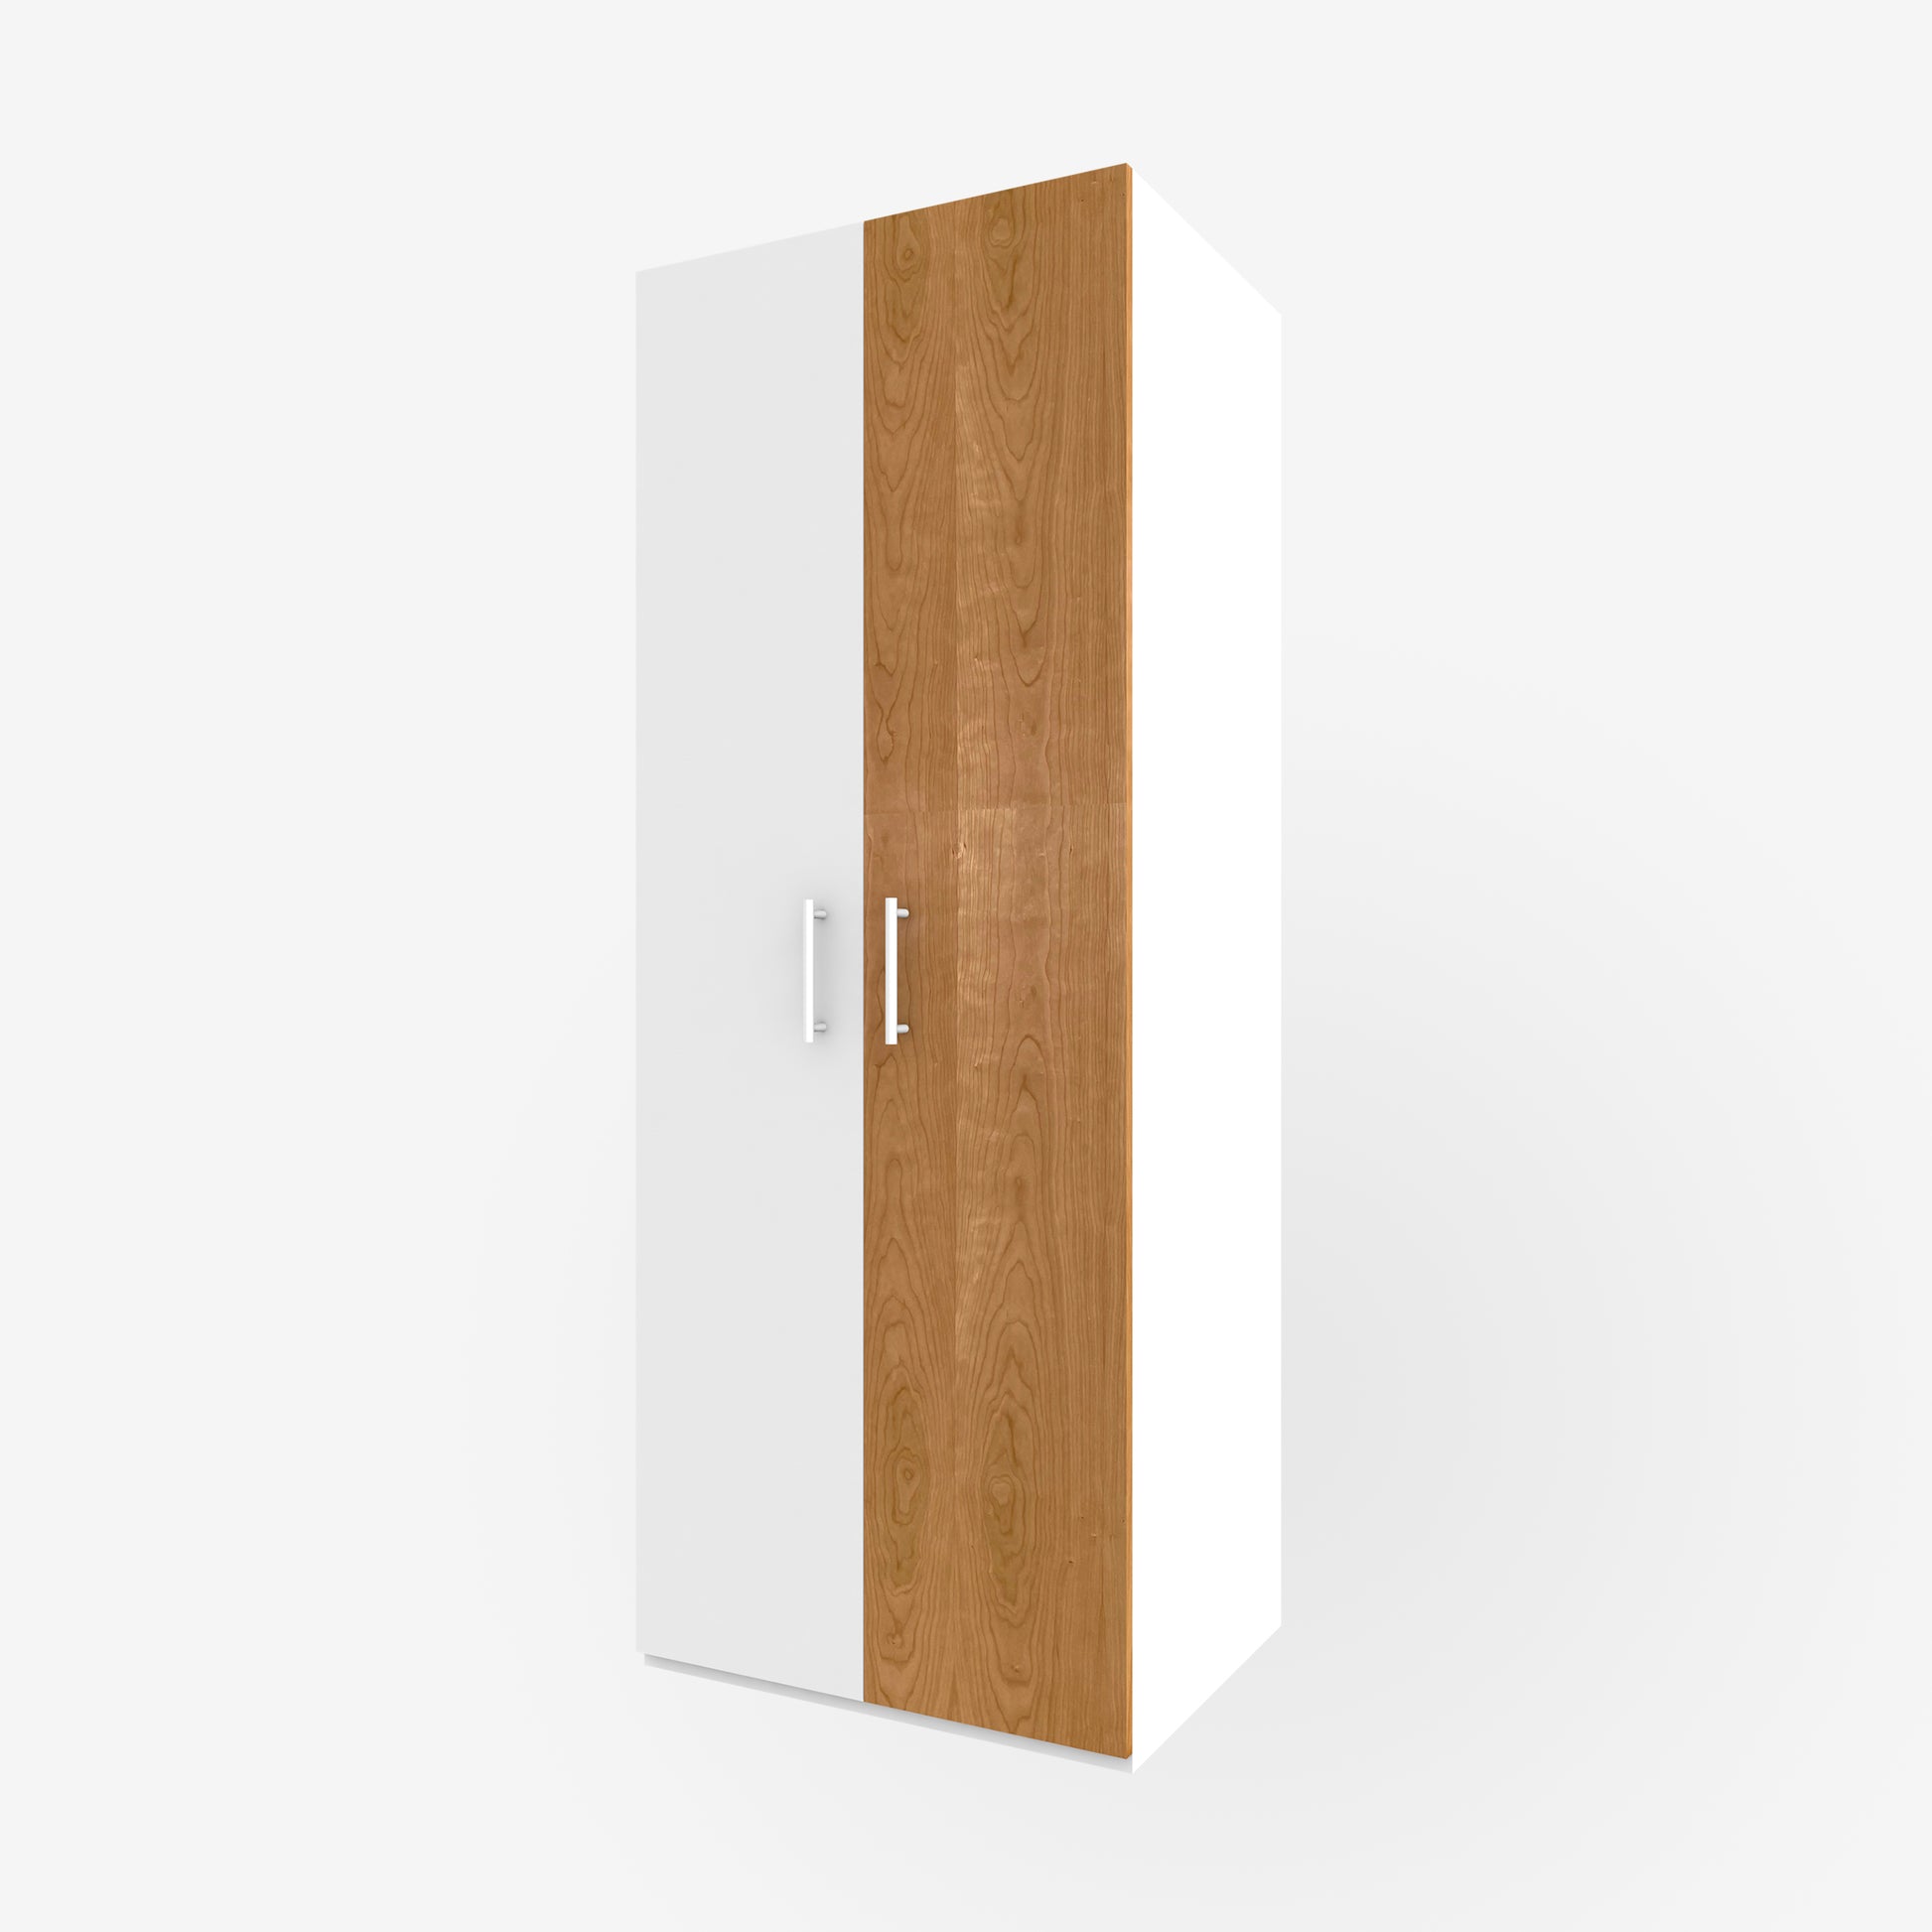 Cherry Door for Pax, Vertical Grain - Real Wood Veneer